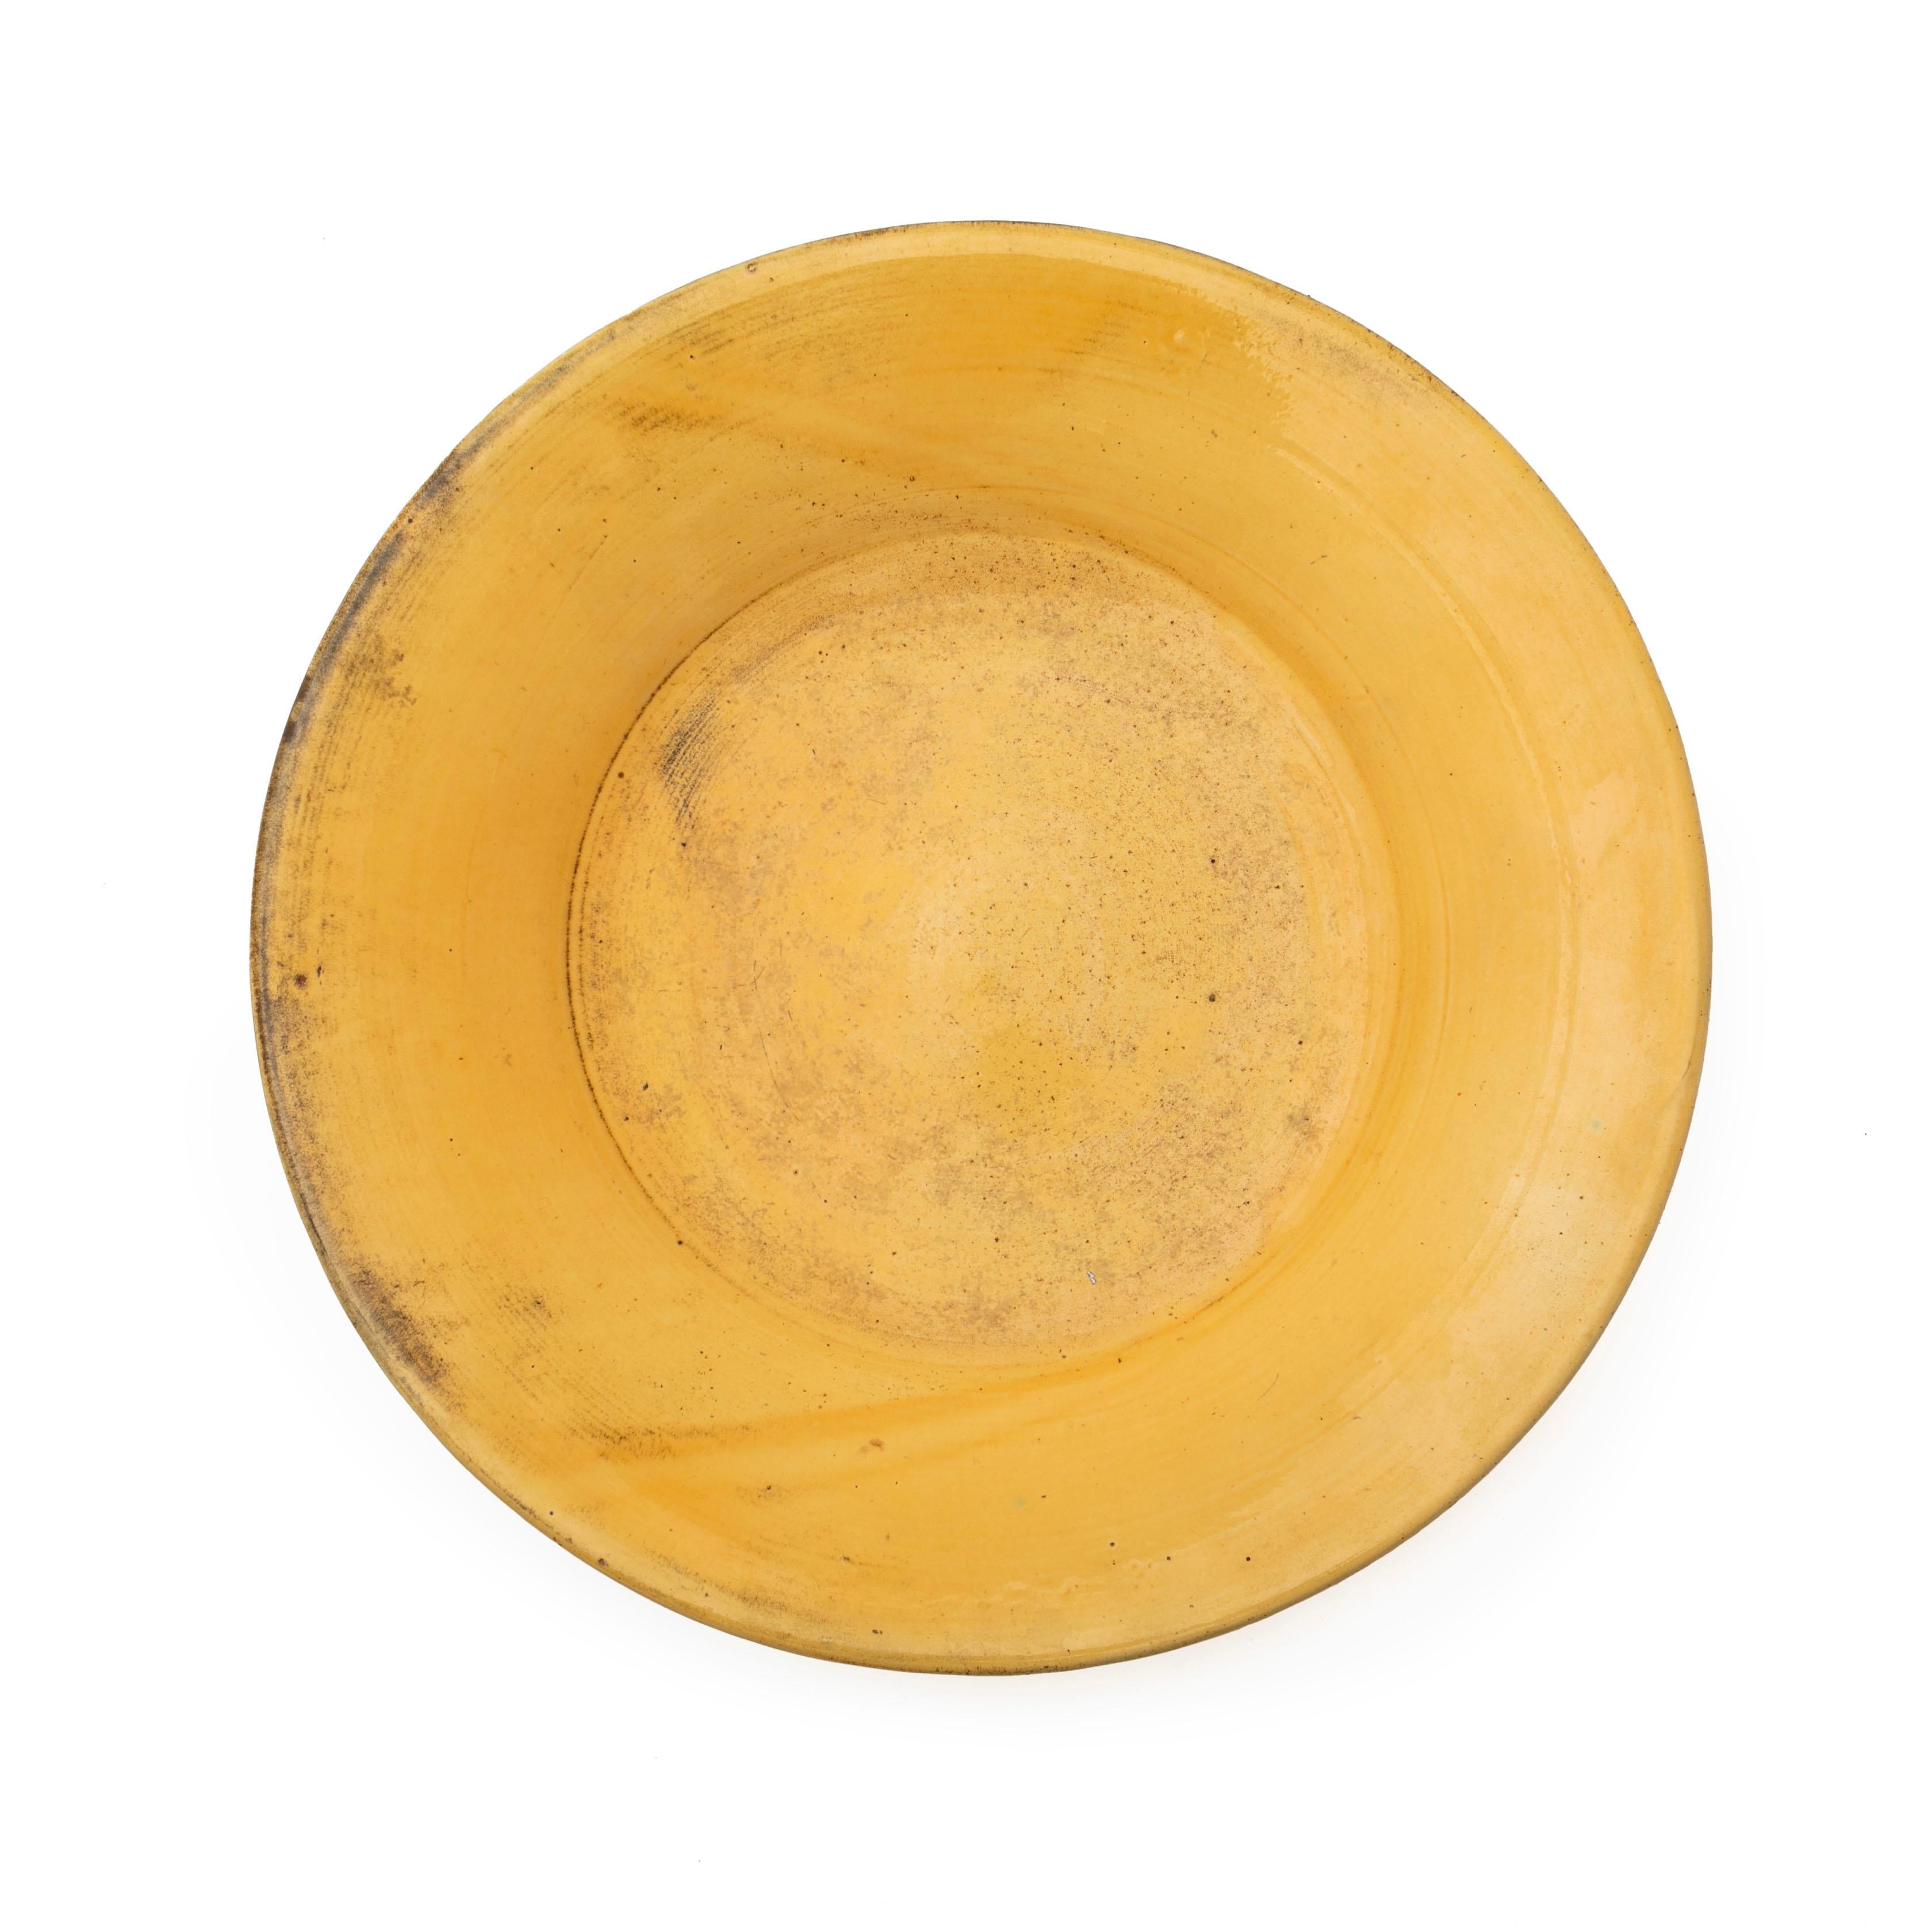 Grand bol / plat en grès émaillé.
Belle glaçure jaune uranium. 
Mesures : 40,5 x 7 cm. 

Signé HAK.

Danemark 1920-1930